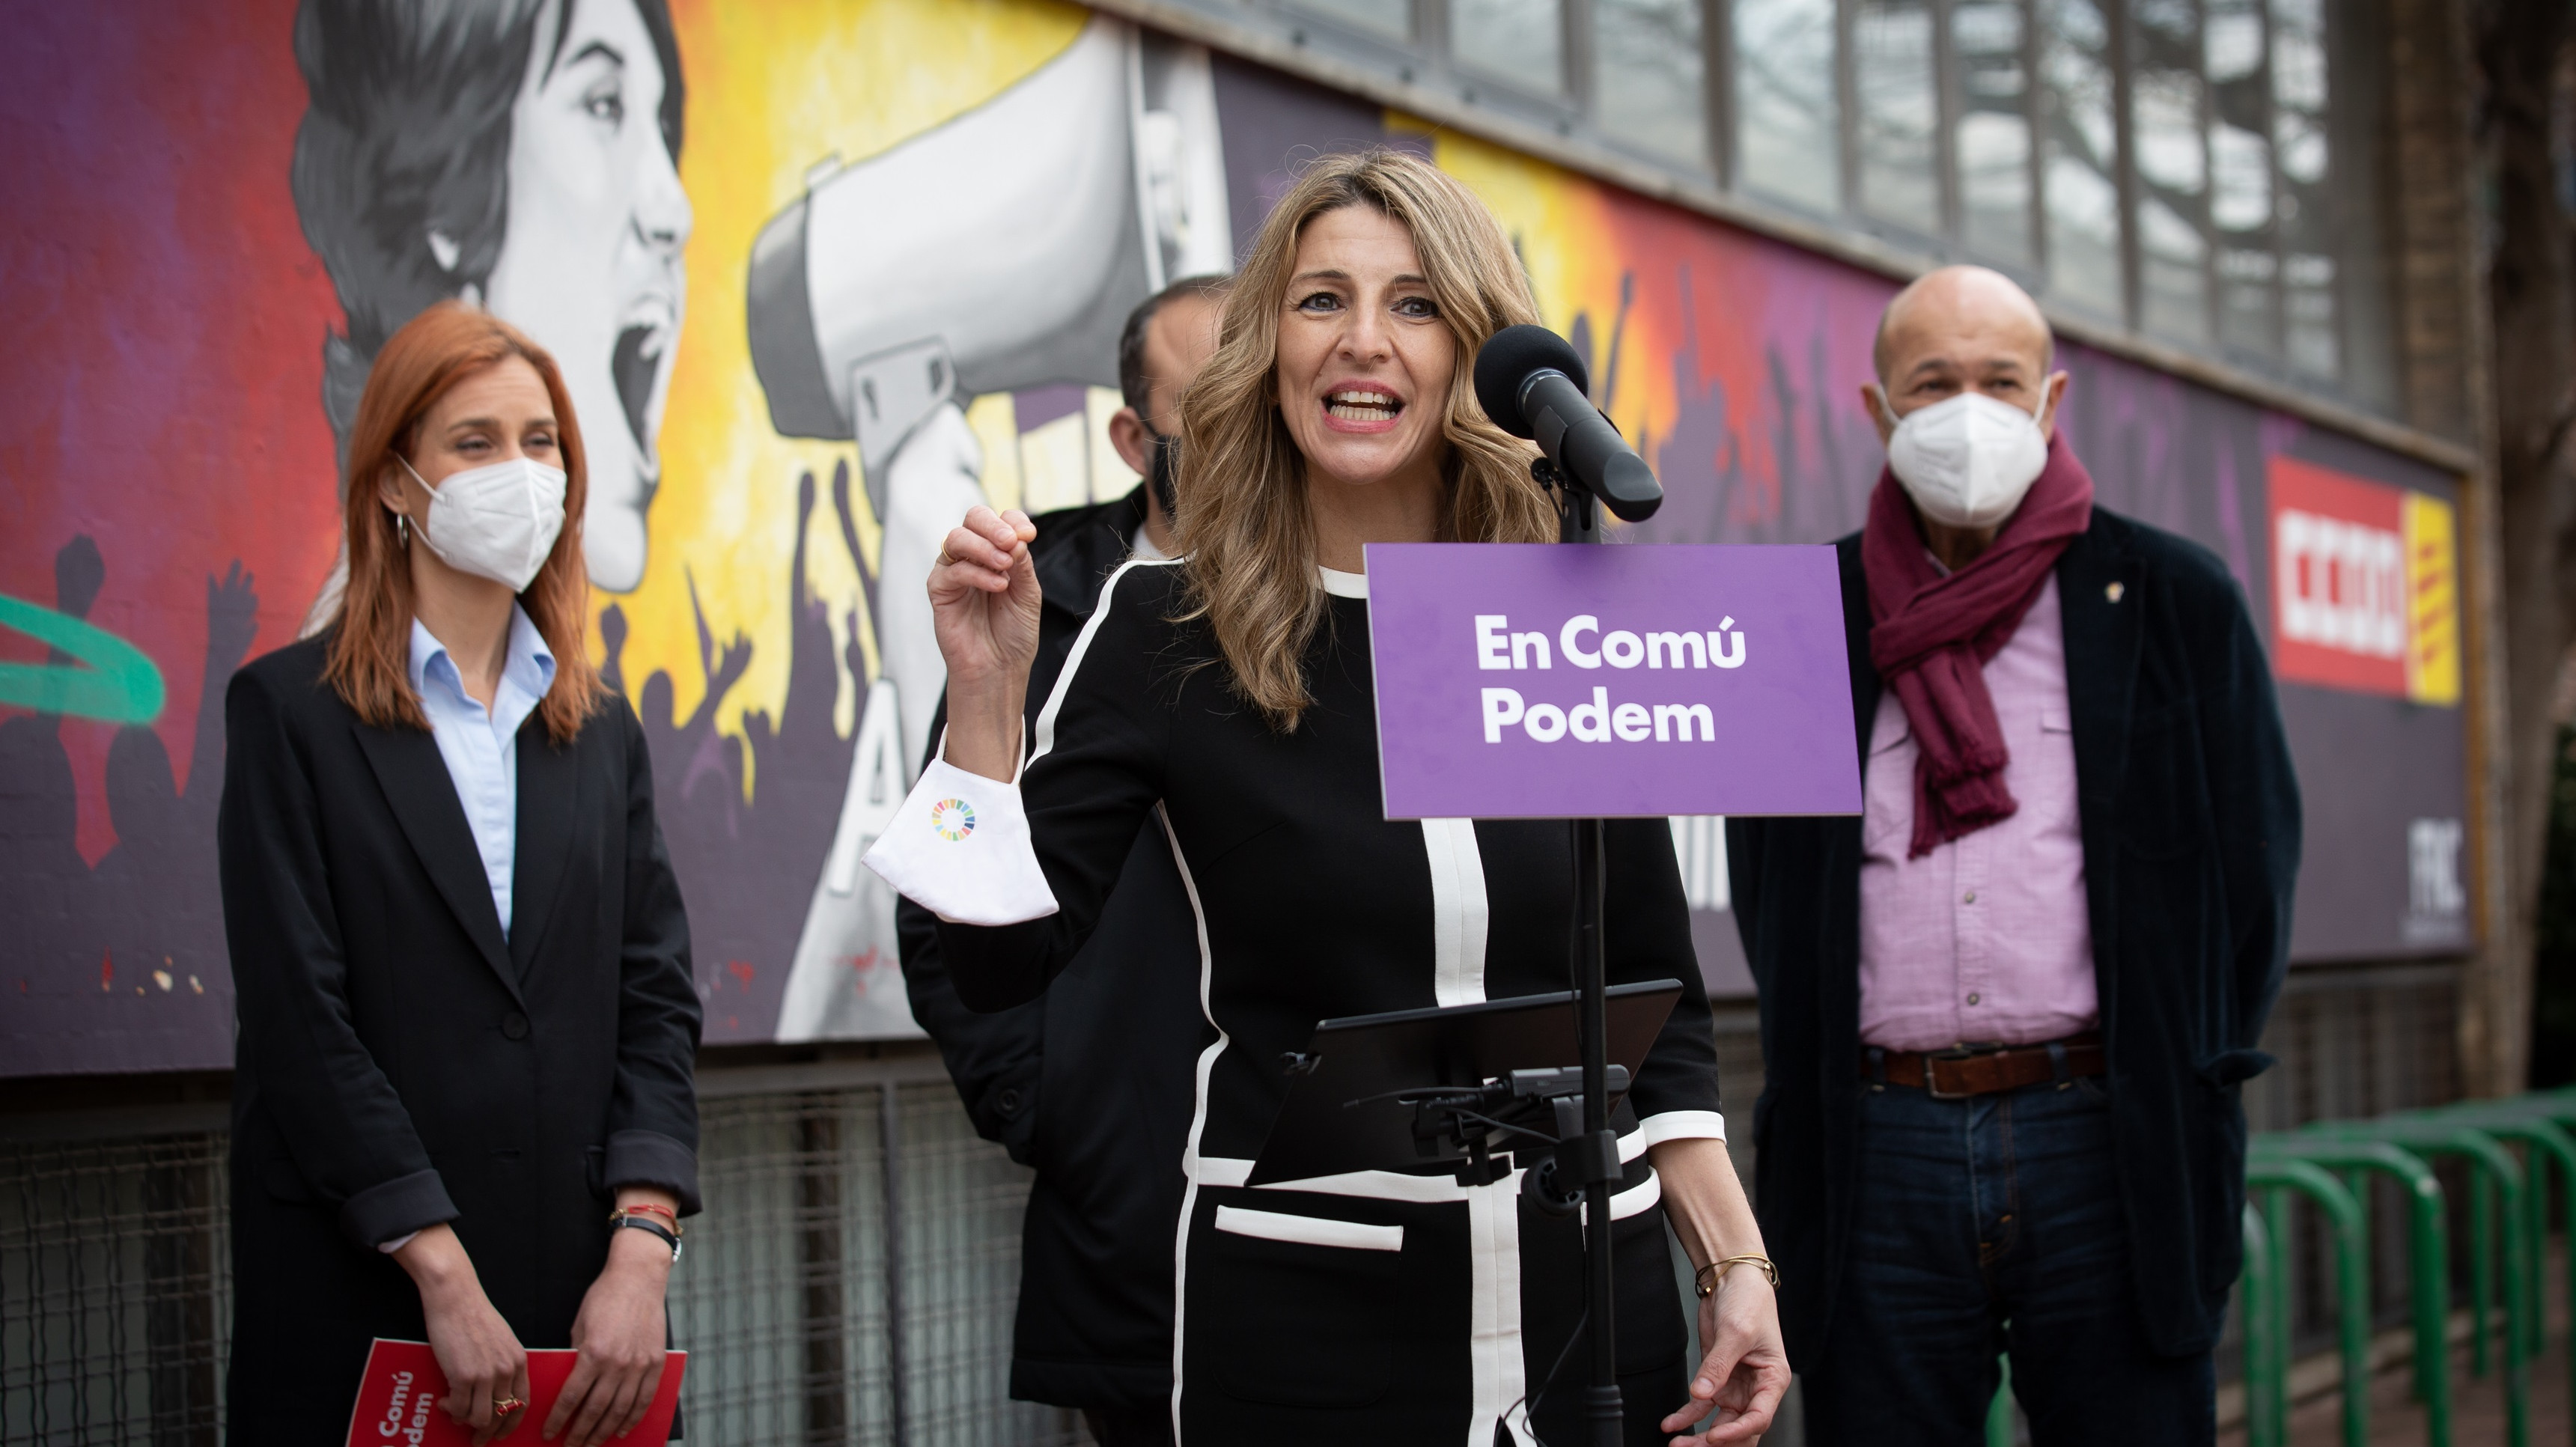 Pablo Iglesias cede una vicepresidencia 'envenenada' a Yolanda Díaz al mantener el control de Podemos